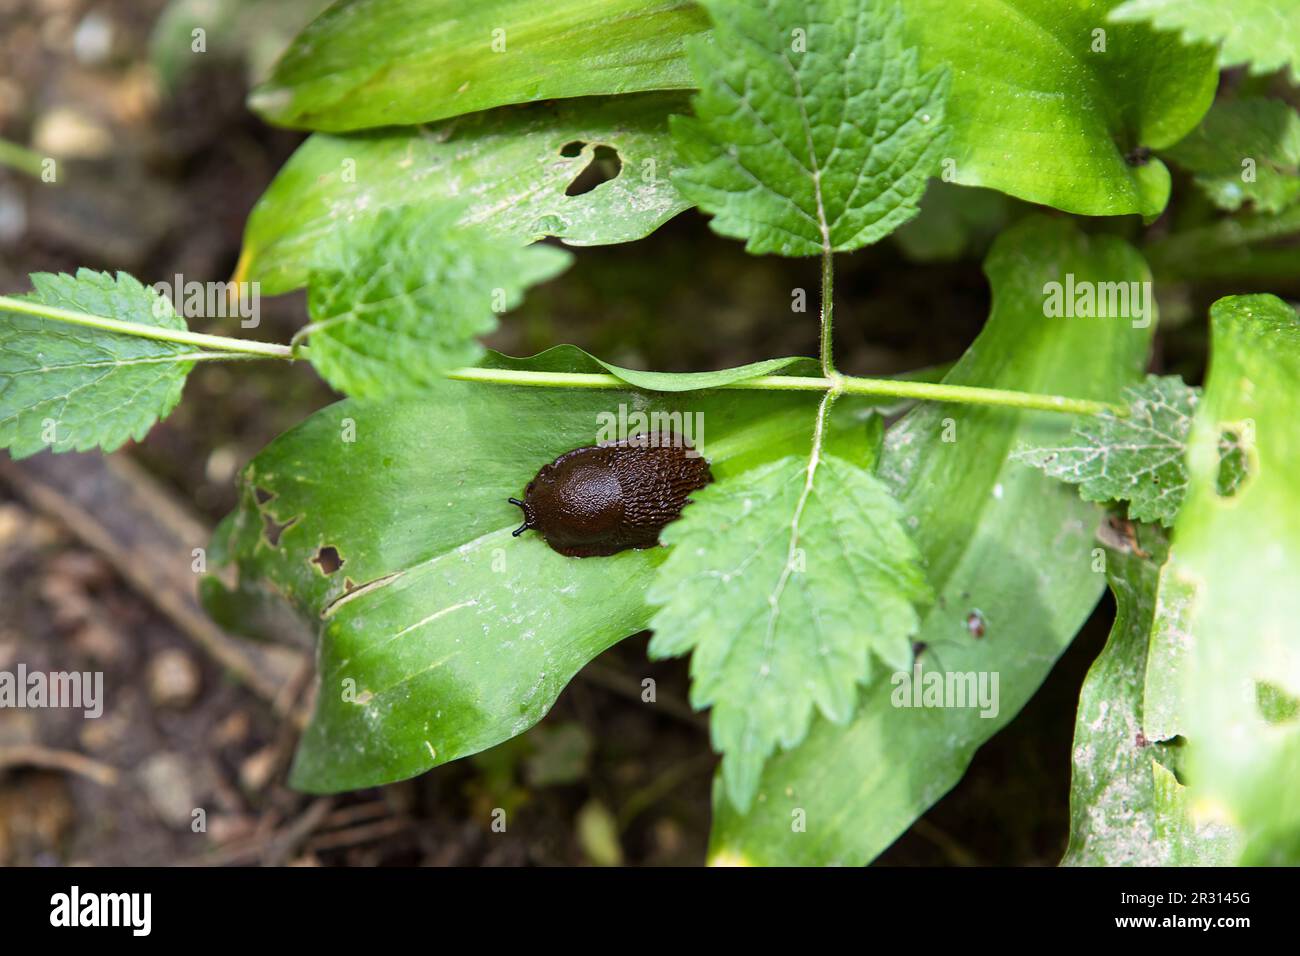 Die schwarze Schnecke, die schwarze arion, die Arion Ader. Süße Schnecke auf grünen Blättern im Wald, Blick von oben. Stockfoto